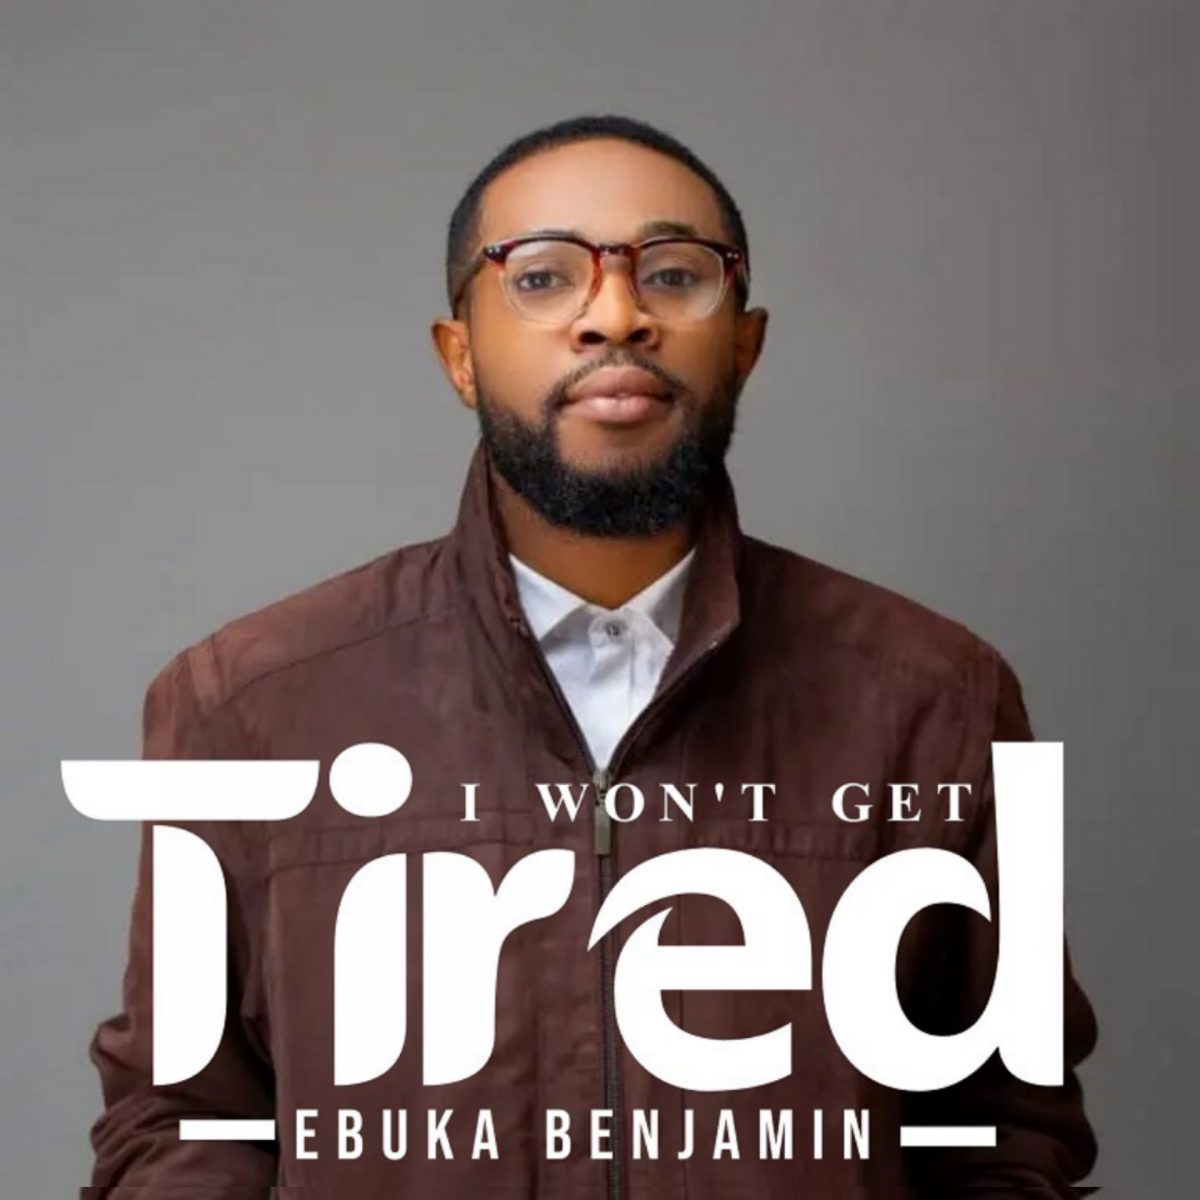 I Won’t Get Tired By Ebuka Benjamin